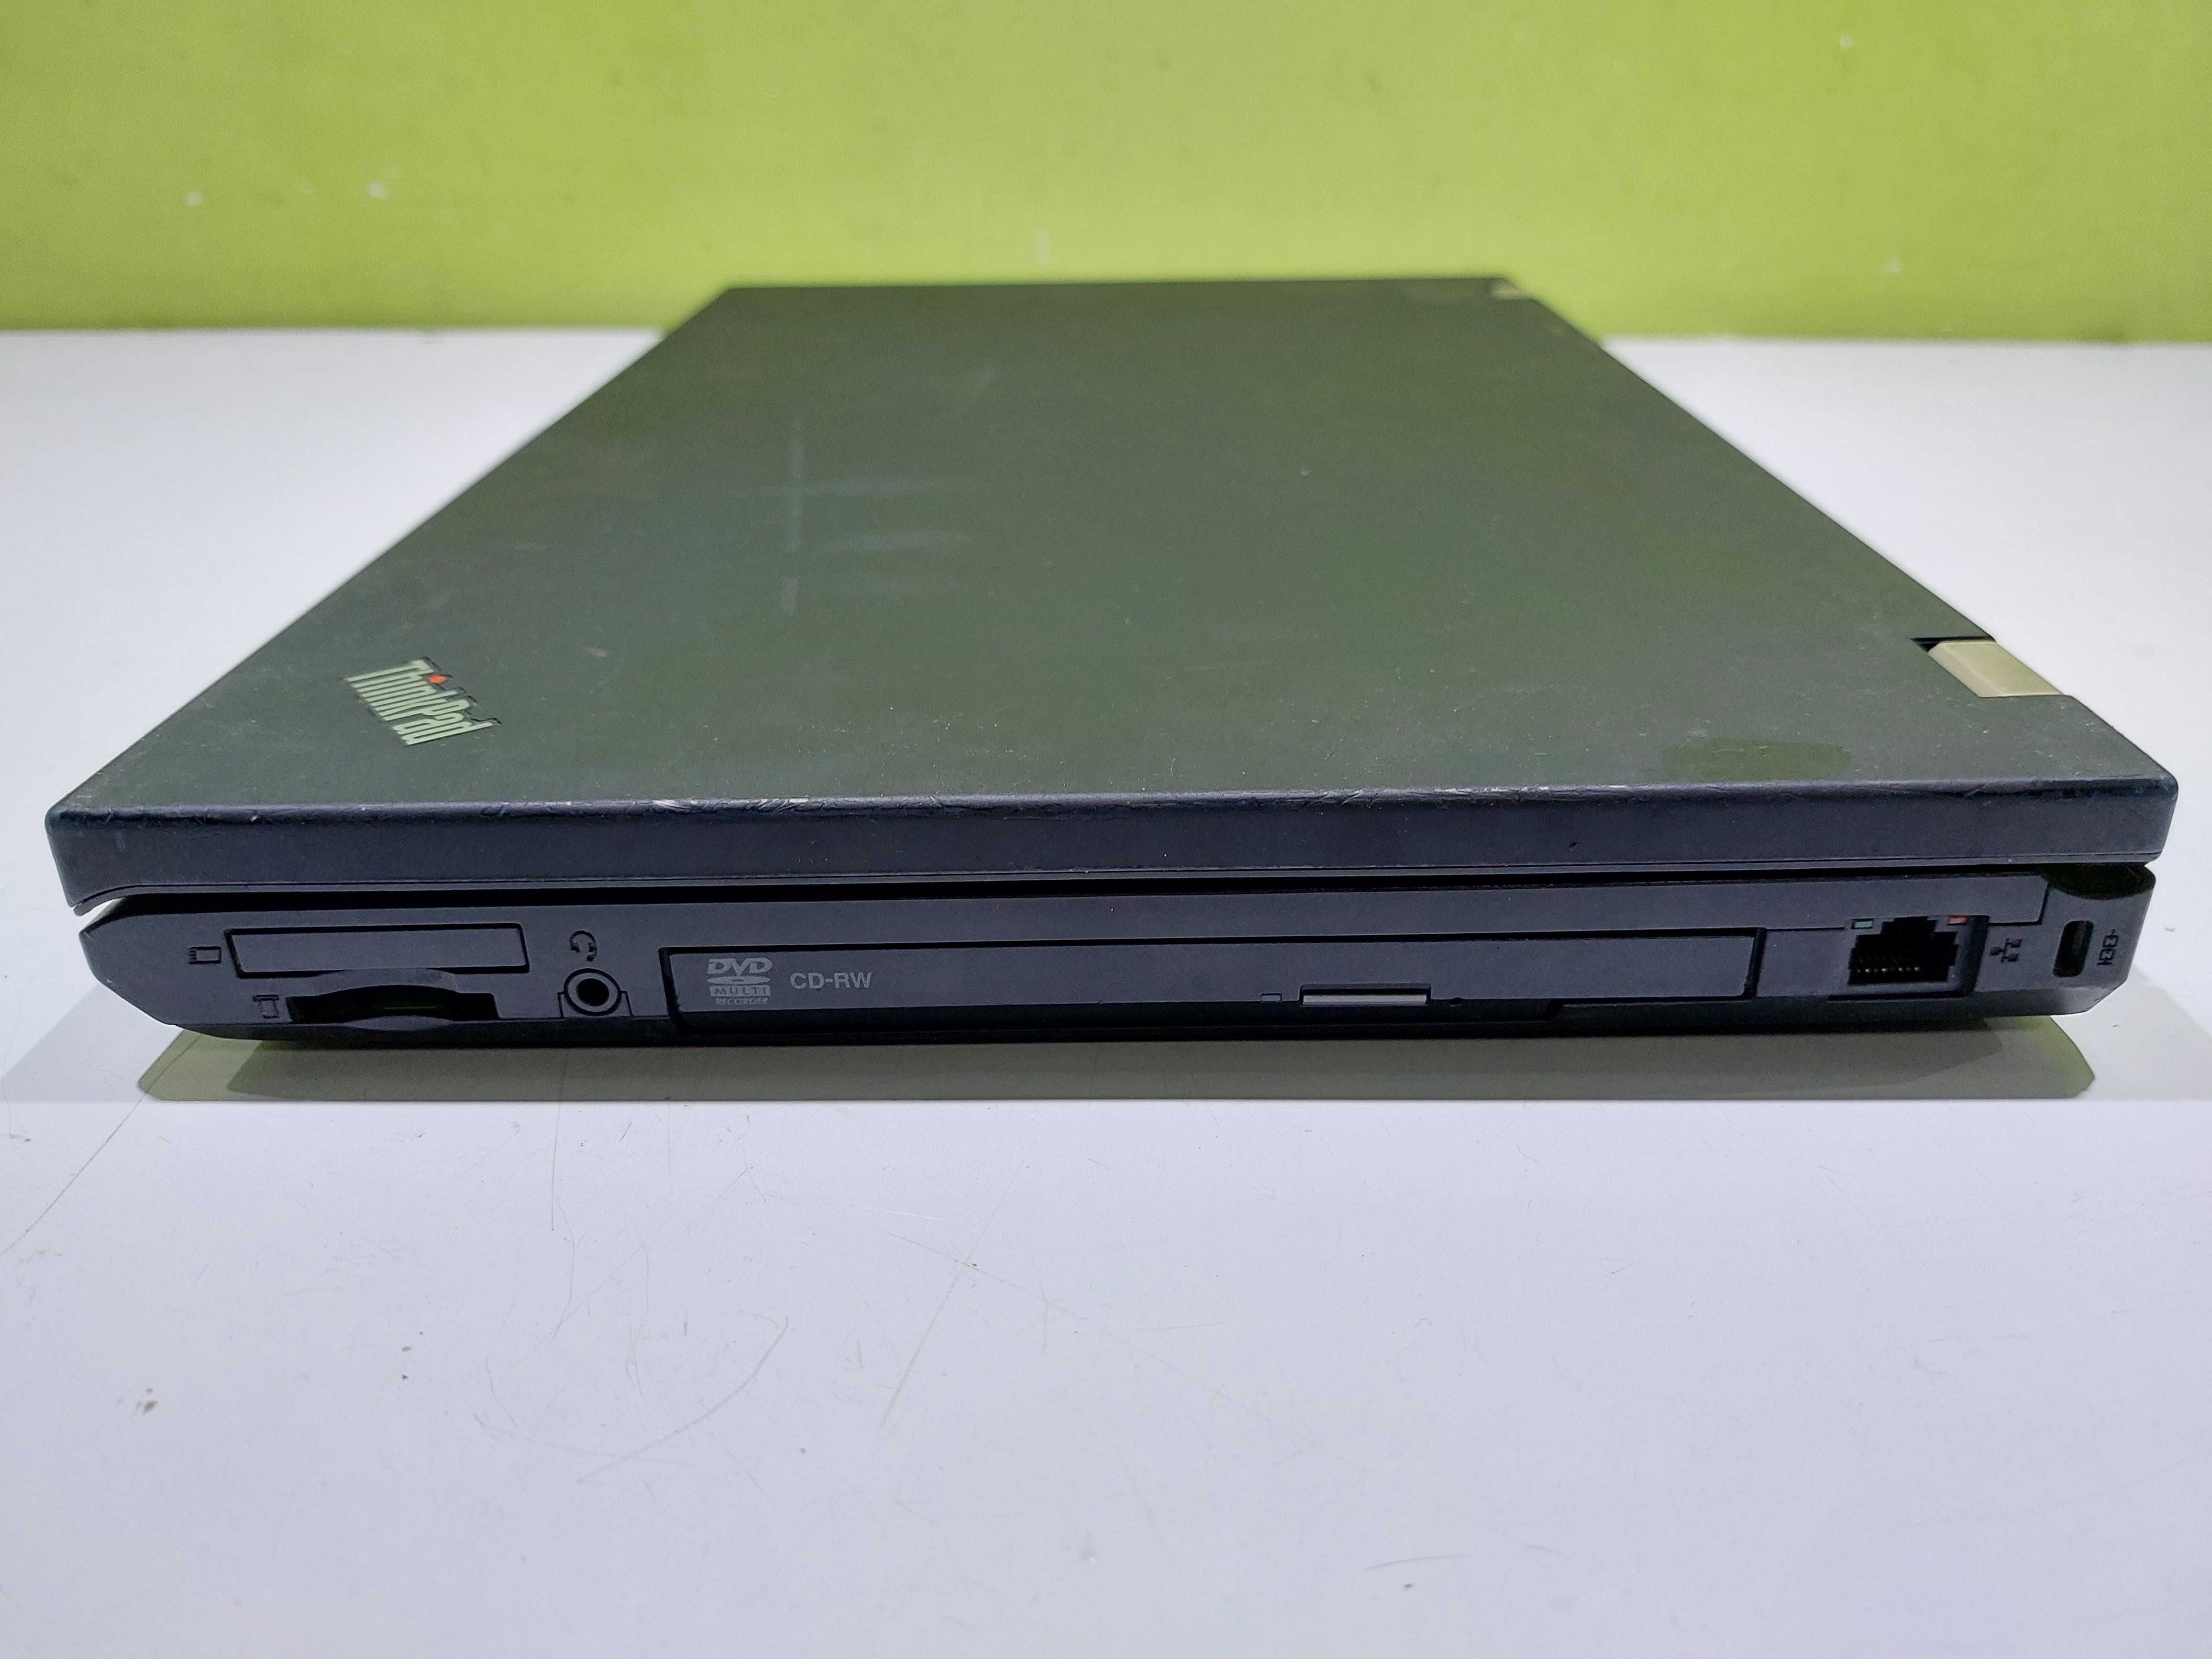 Laptop Lenovo W510 i7 4GB 500GB 15,6" sklep